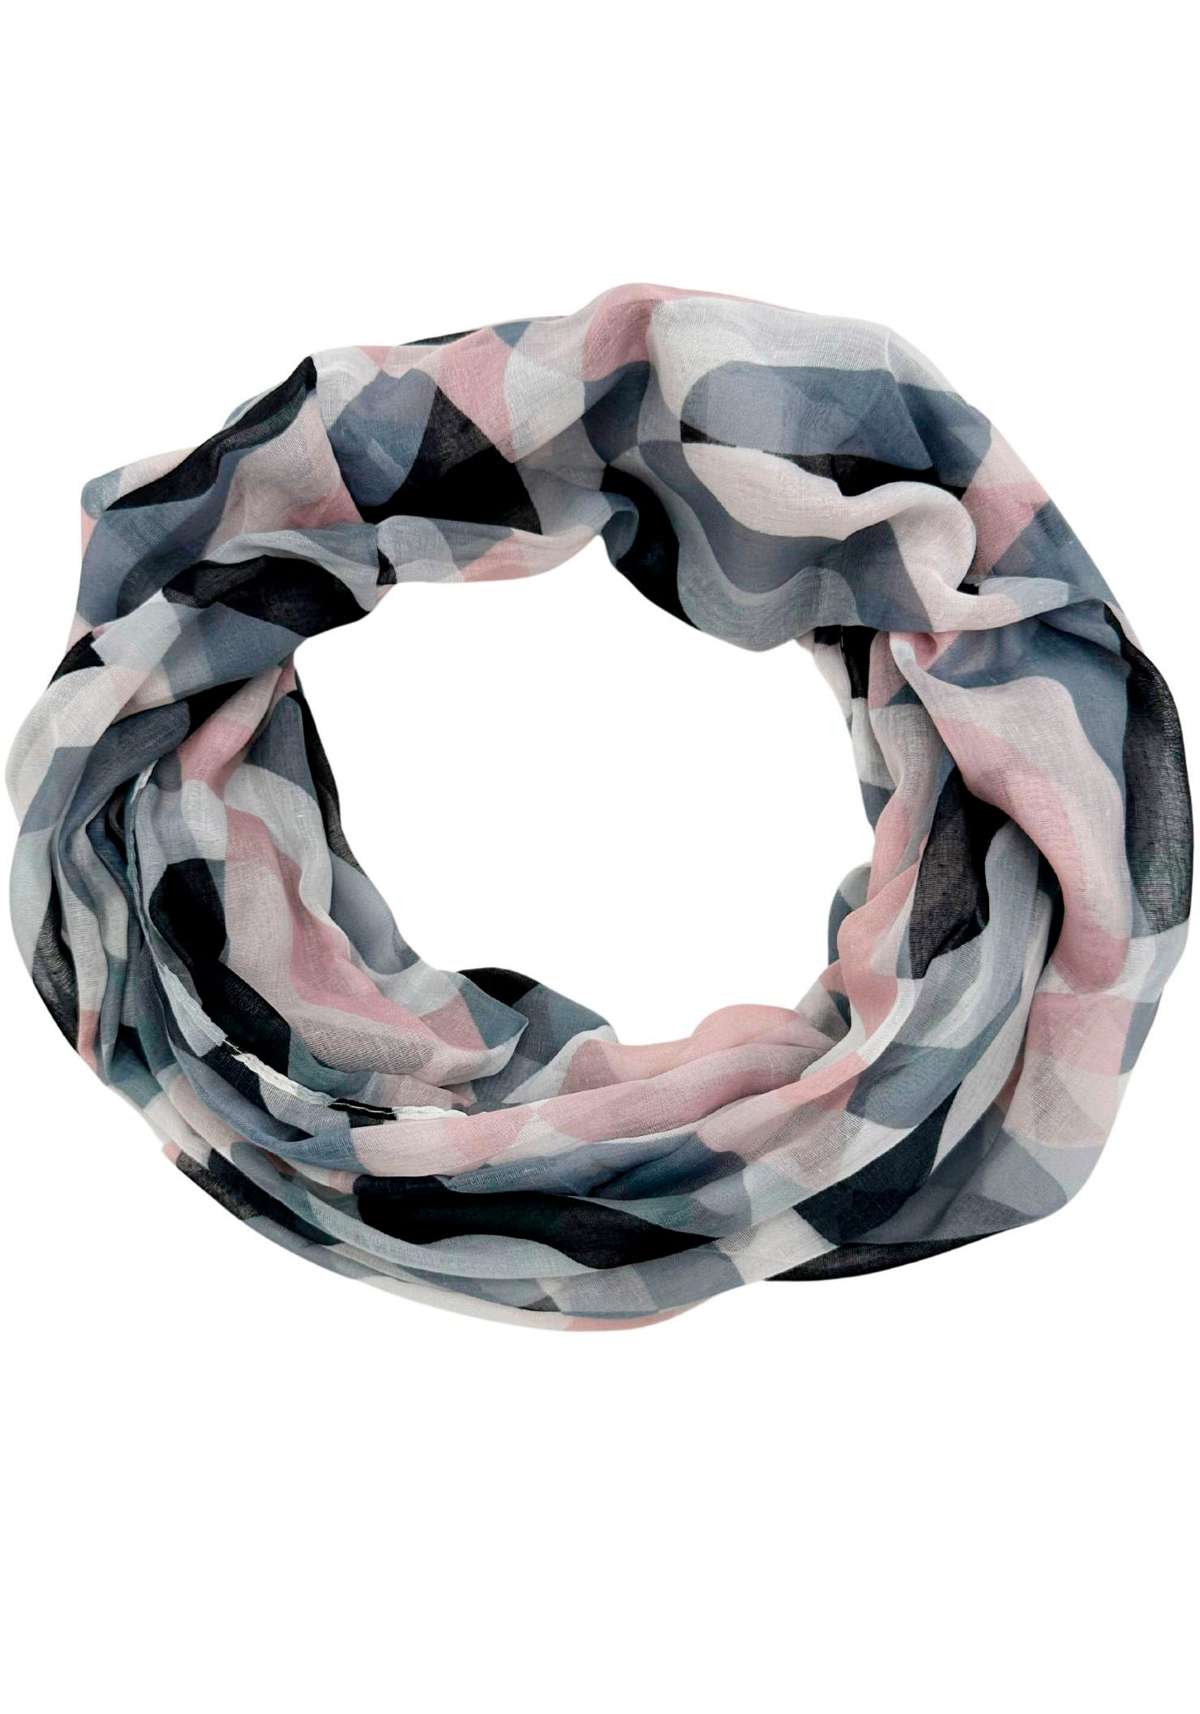 Модный шарф с волнистым узором